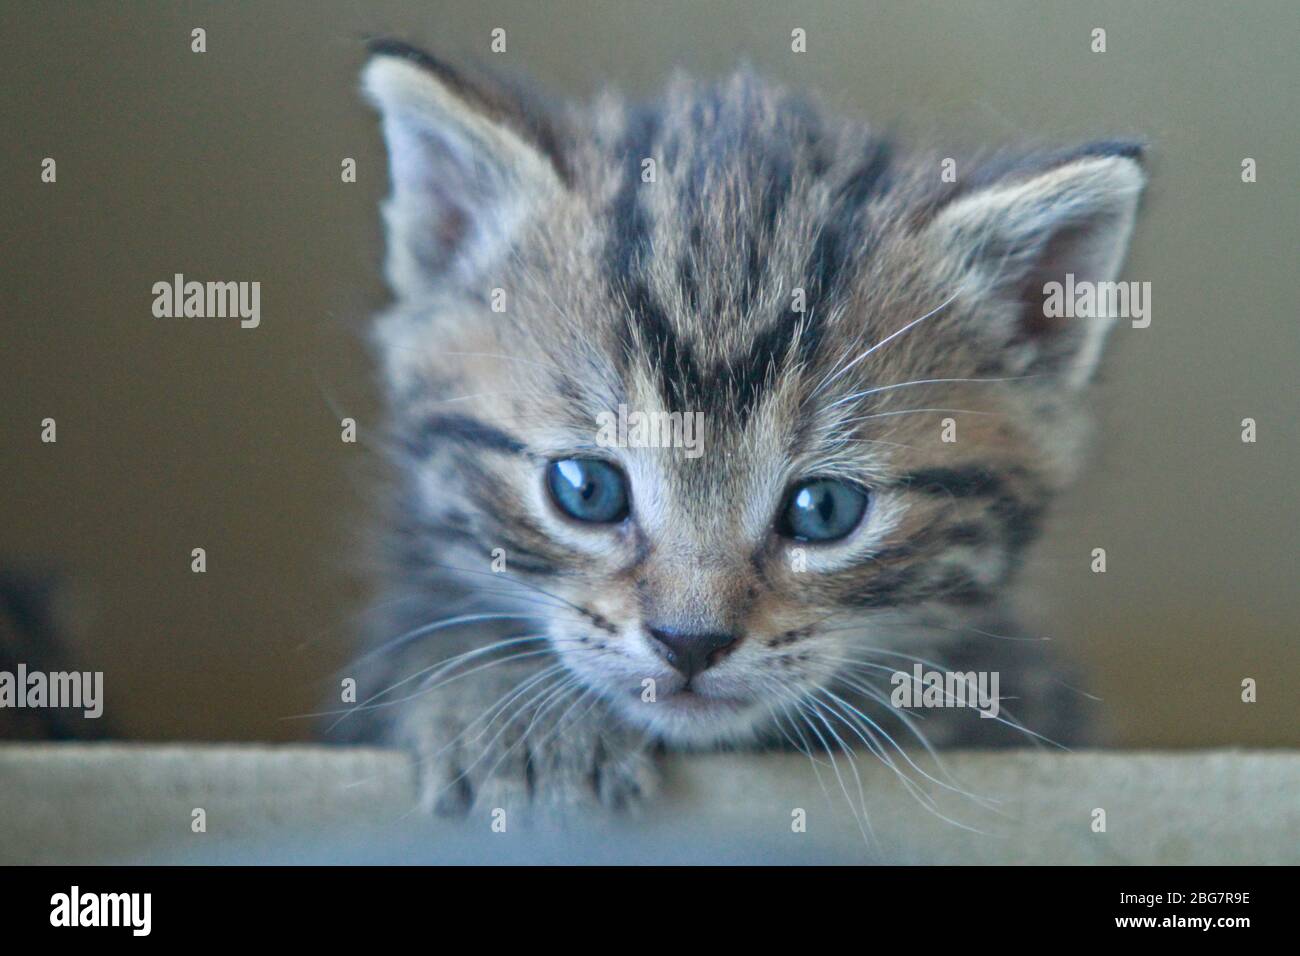 curios pequeño gatito peeking fuera de la caja Foto de stock